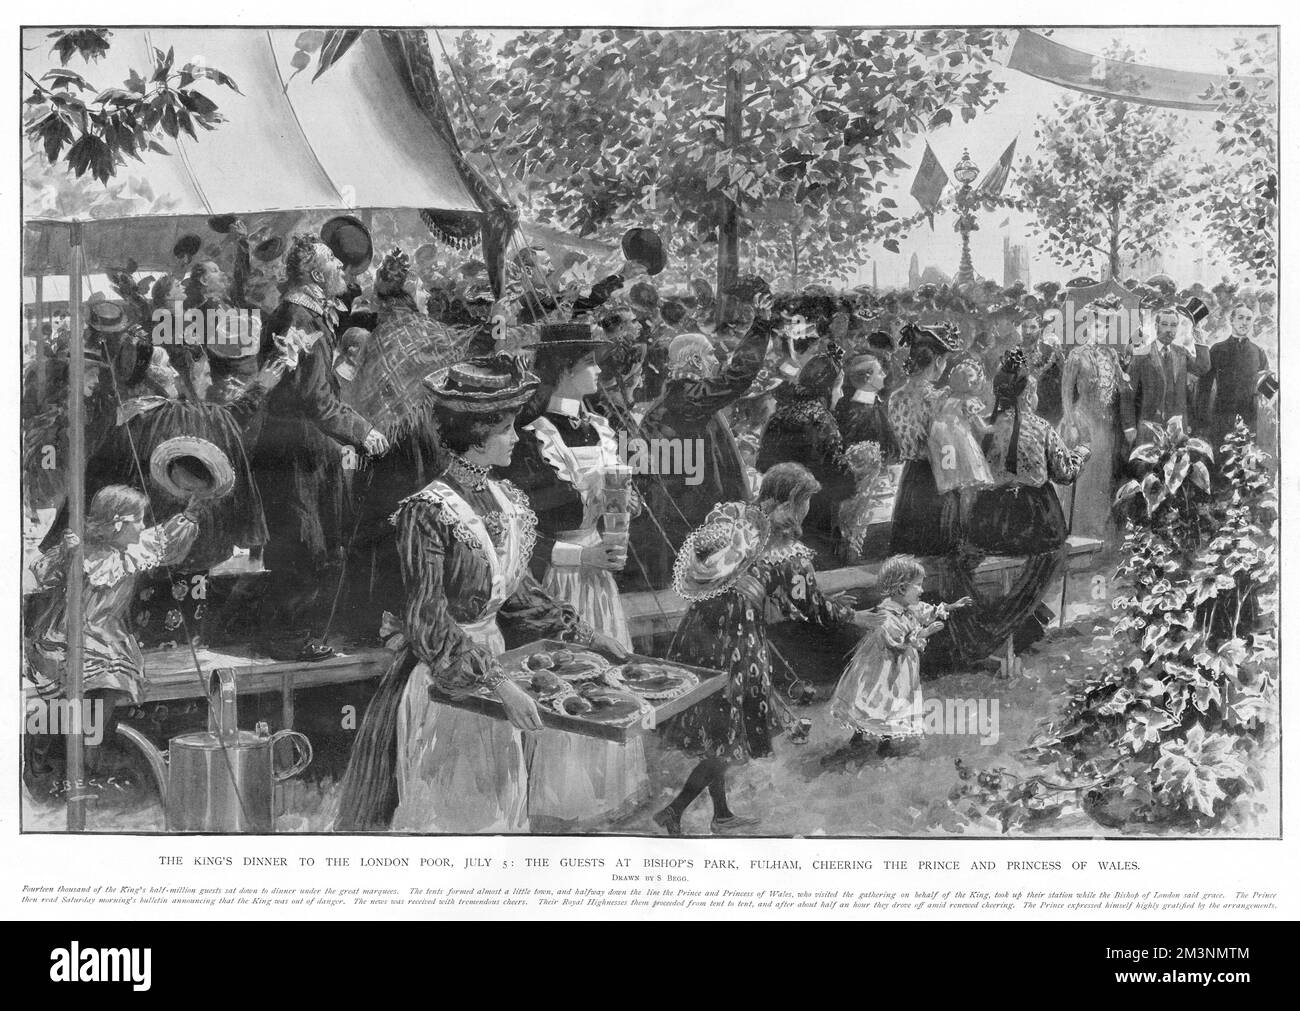 Gäste im Bishop's Park jubeln den Prinzen und die Prinzessin von Wales an, wenn sie am 5.. Juli 1902 zum King's Dinner im London Poor ankommen. Datum: Juli 1902 Stockfoto